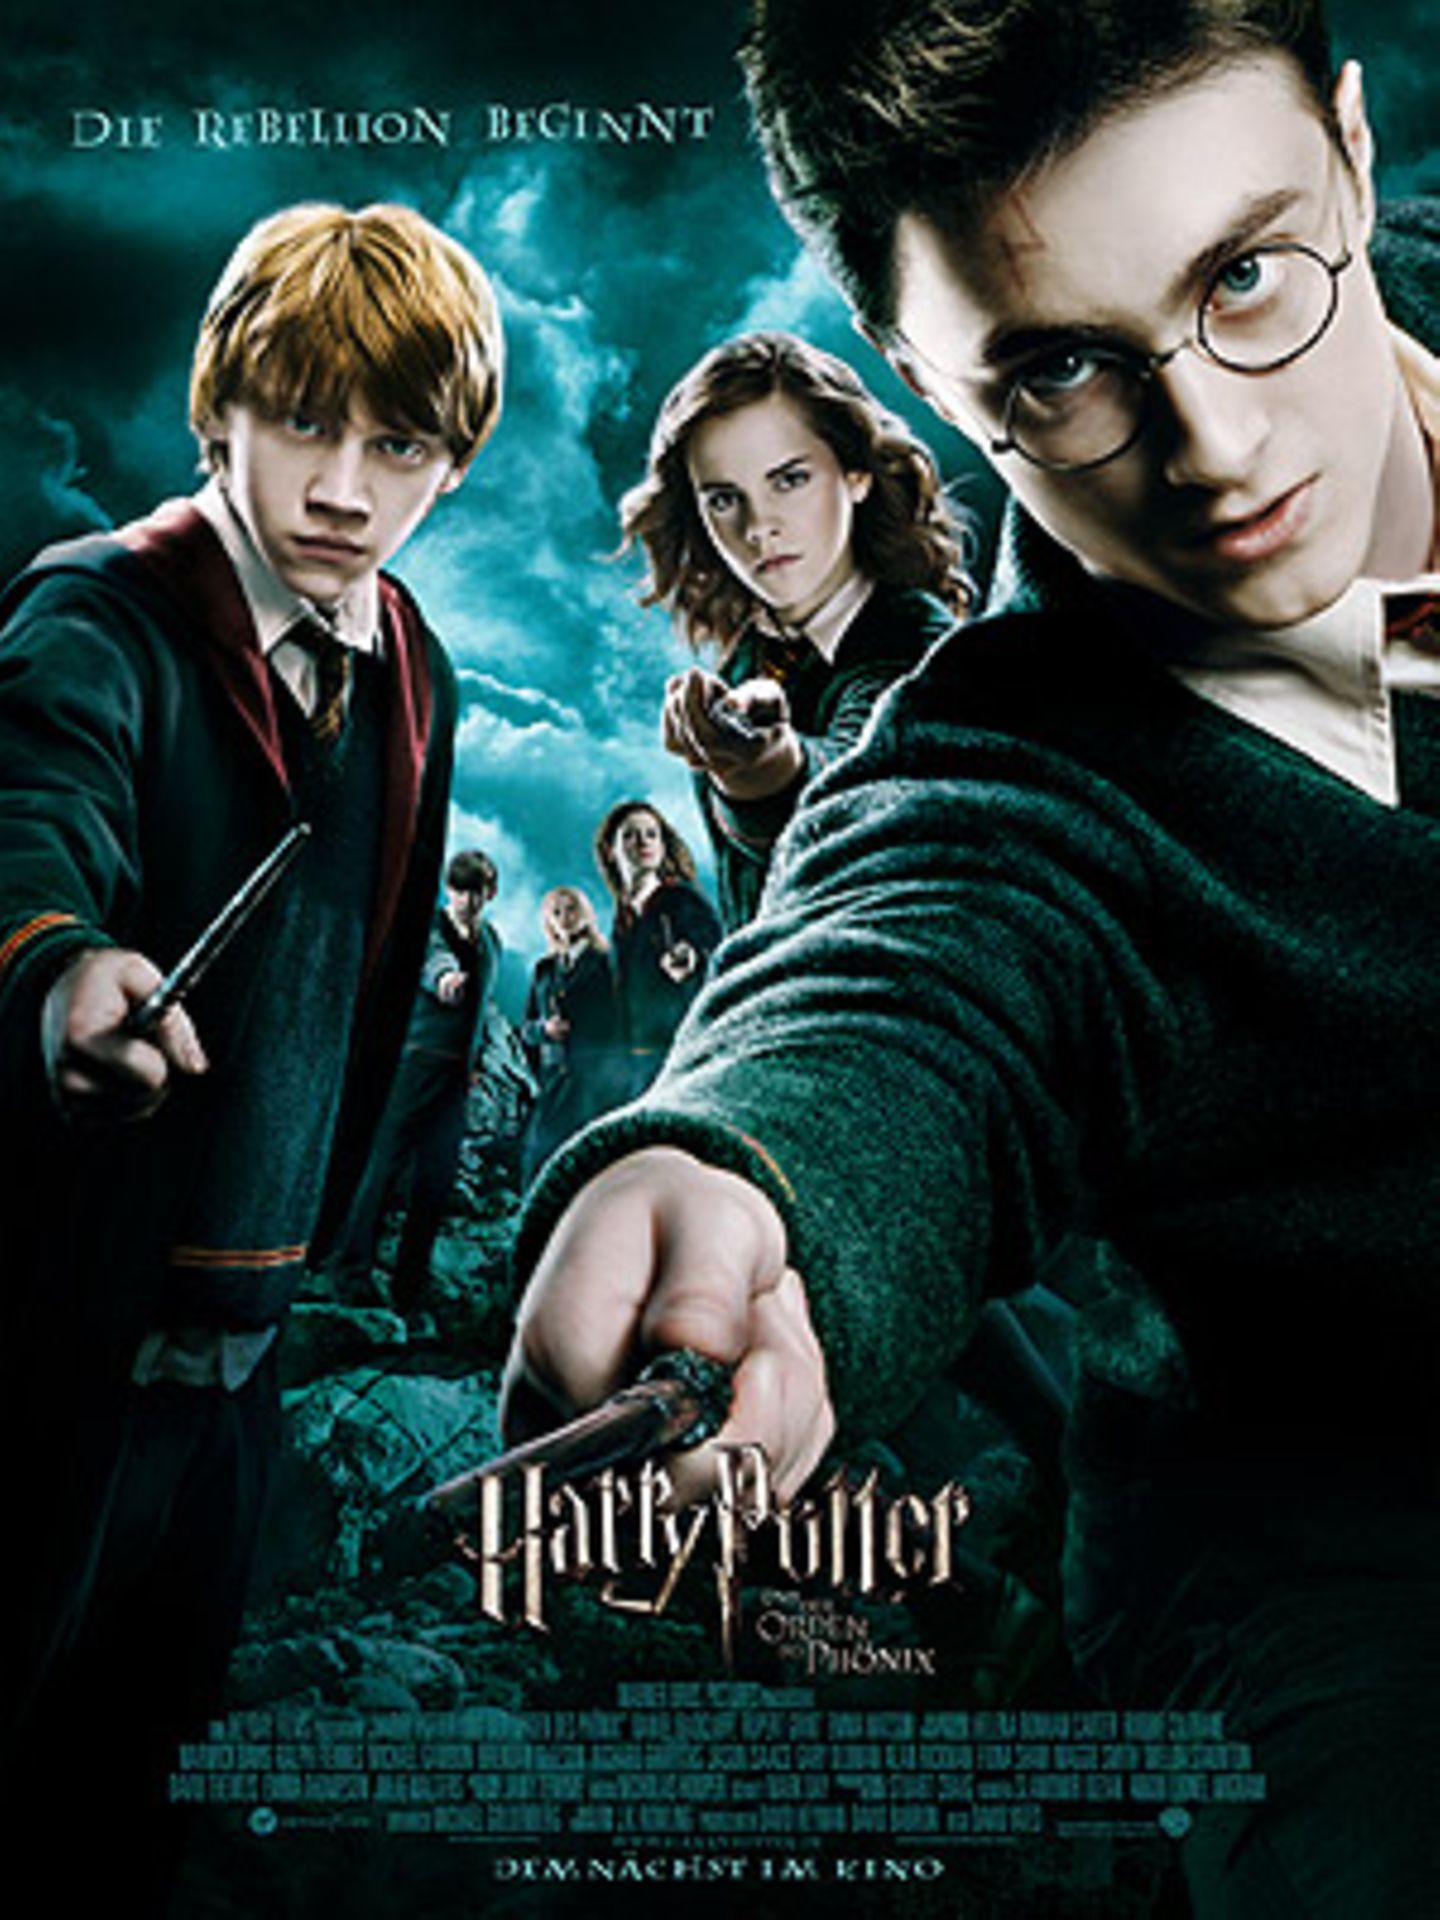 Fotostrecke: "Harry Potter und der Orden des Phoenix"